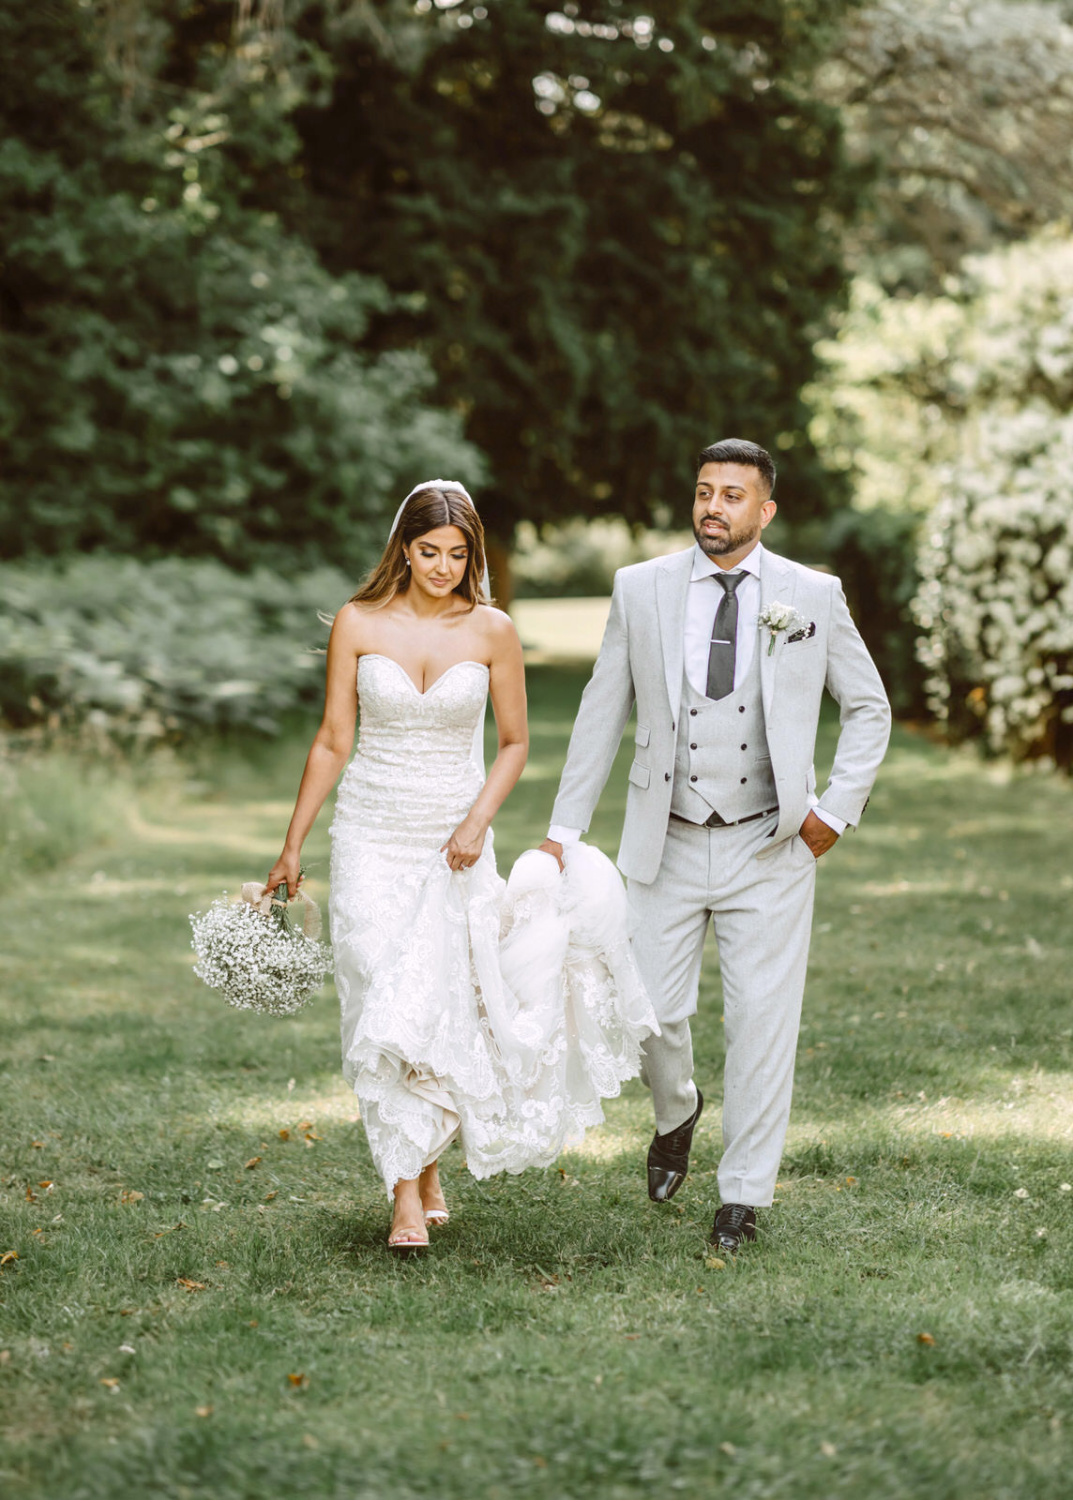 A bride and groom walking through a garden.